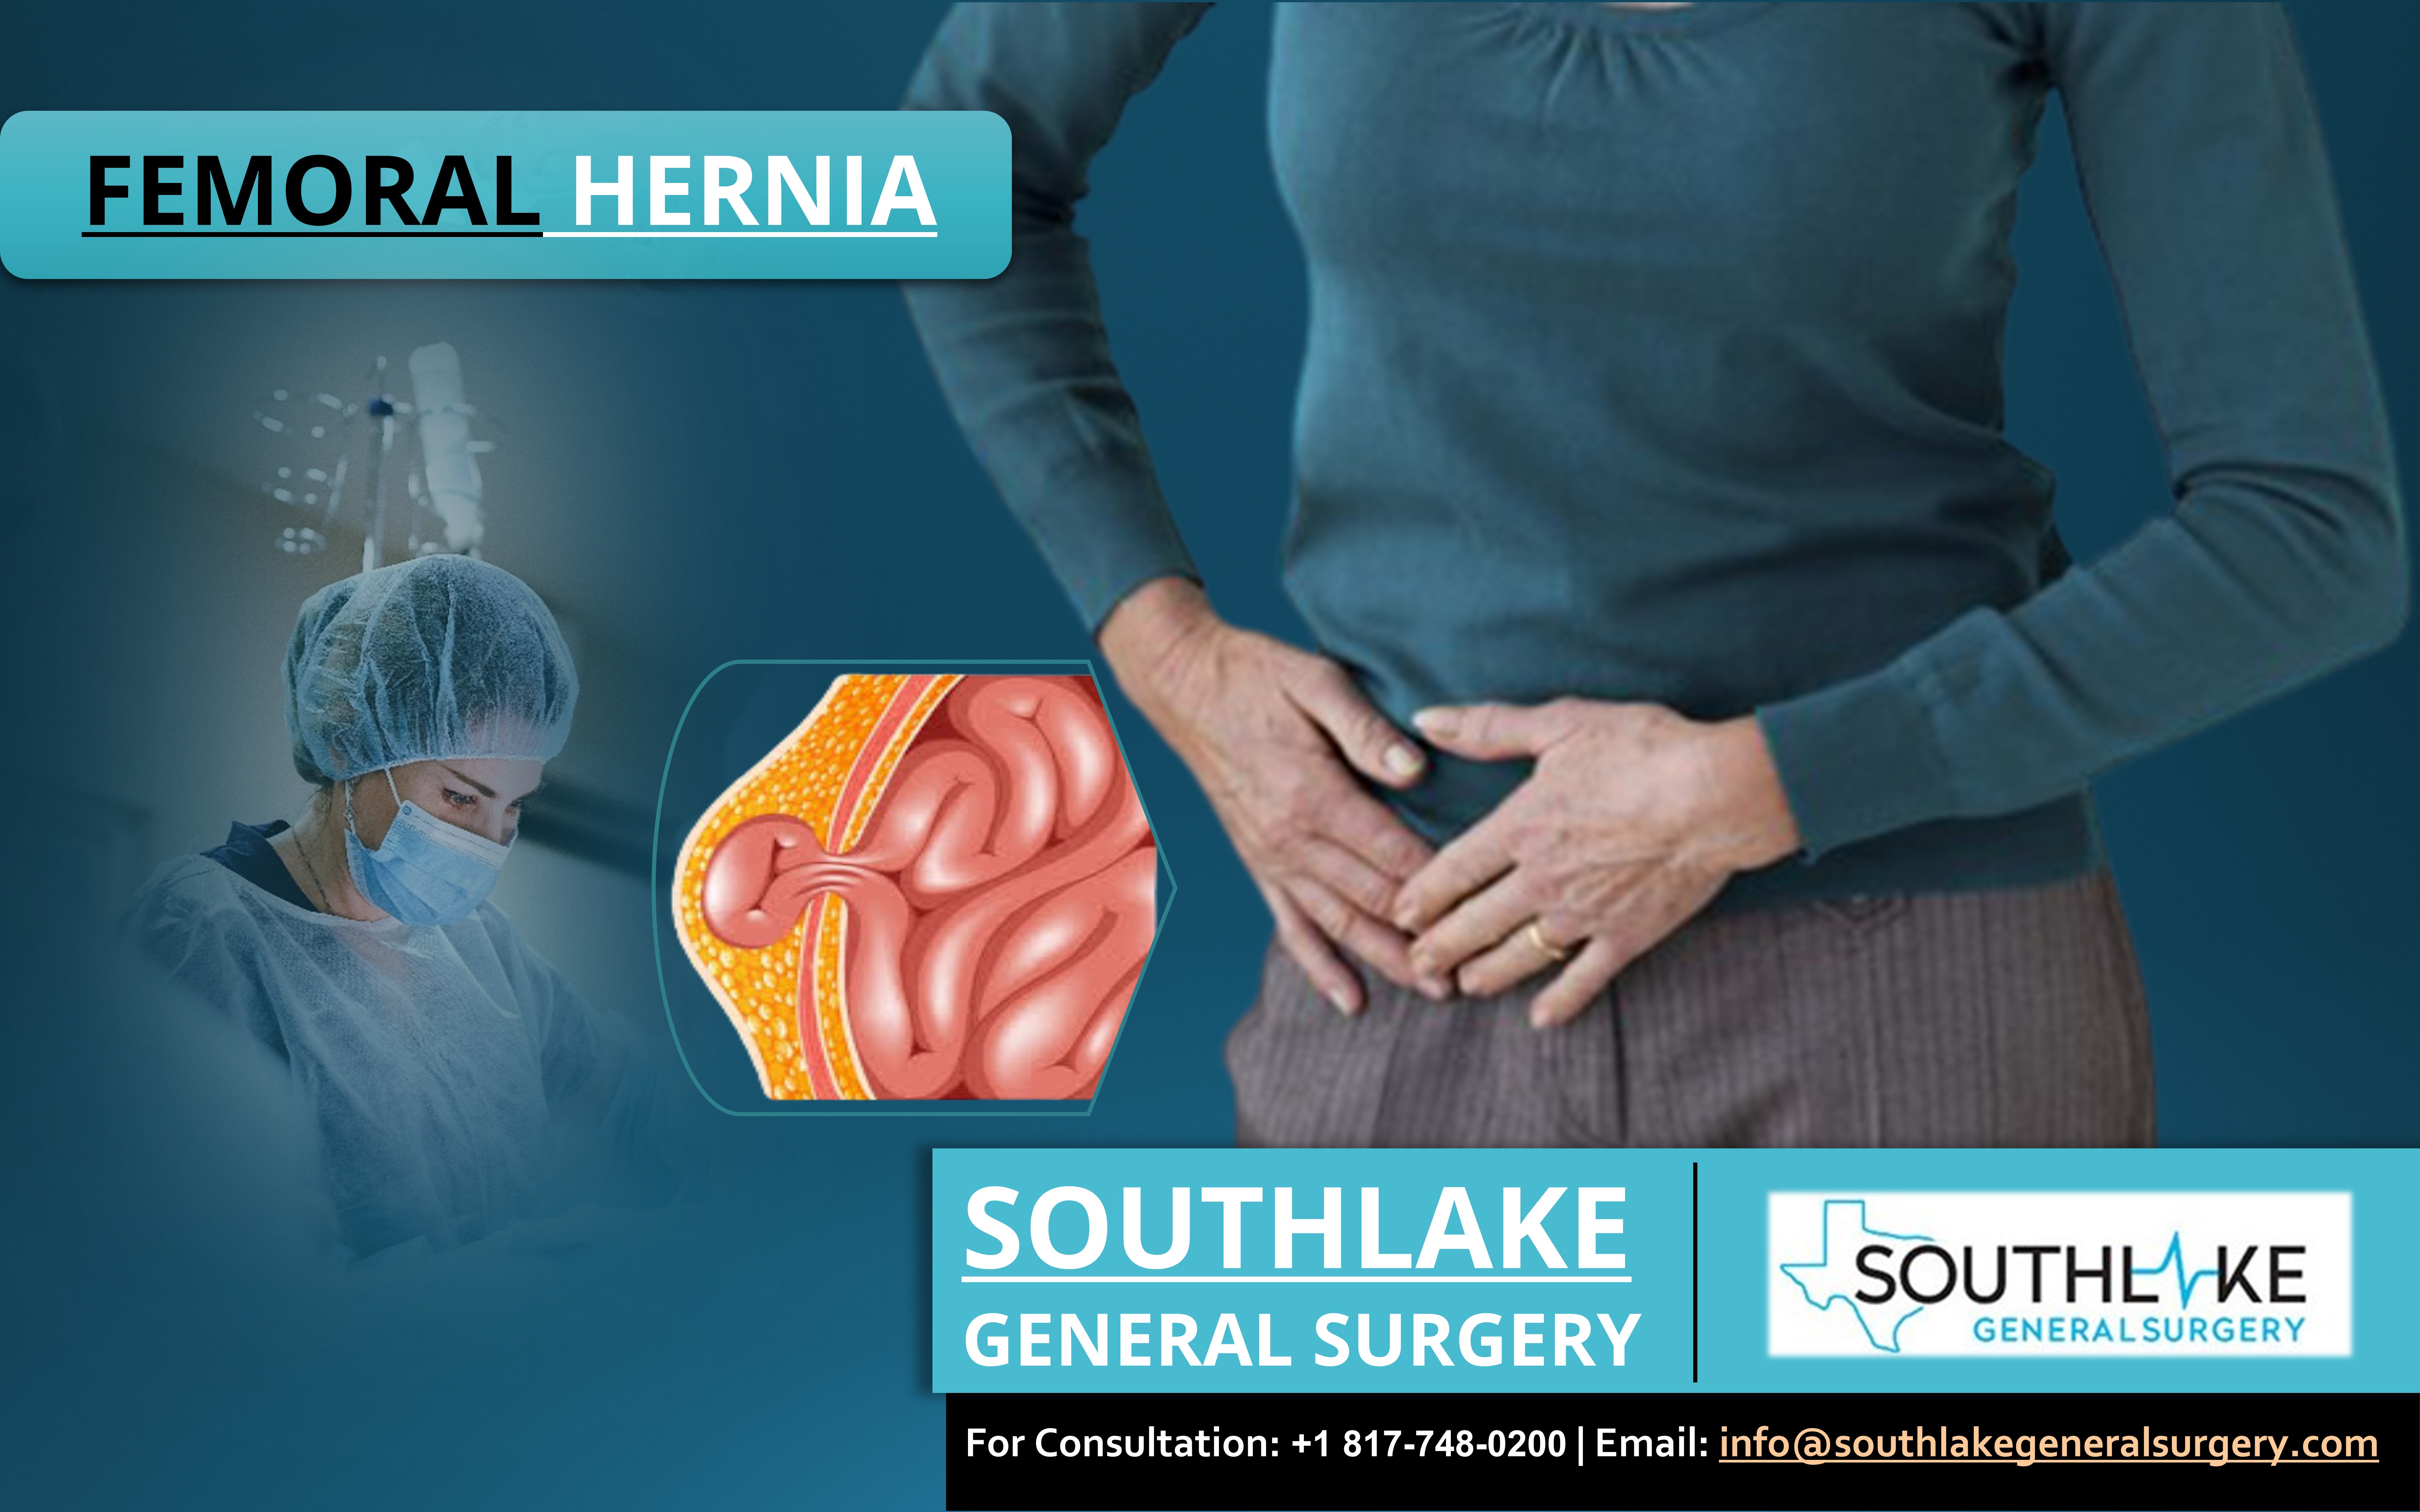 Femoral Hernia Surgery at Southlake General Surgery